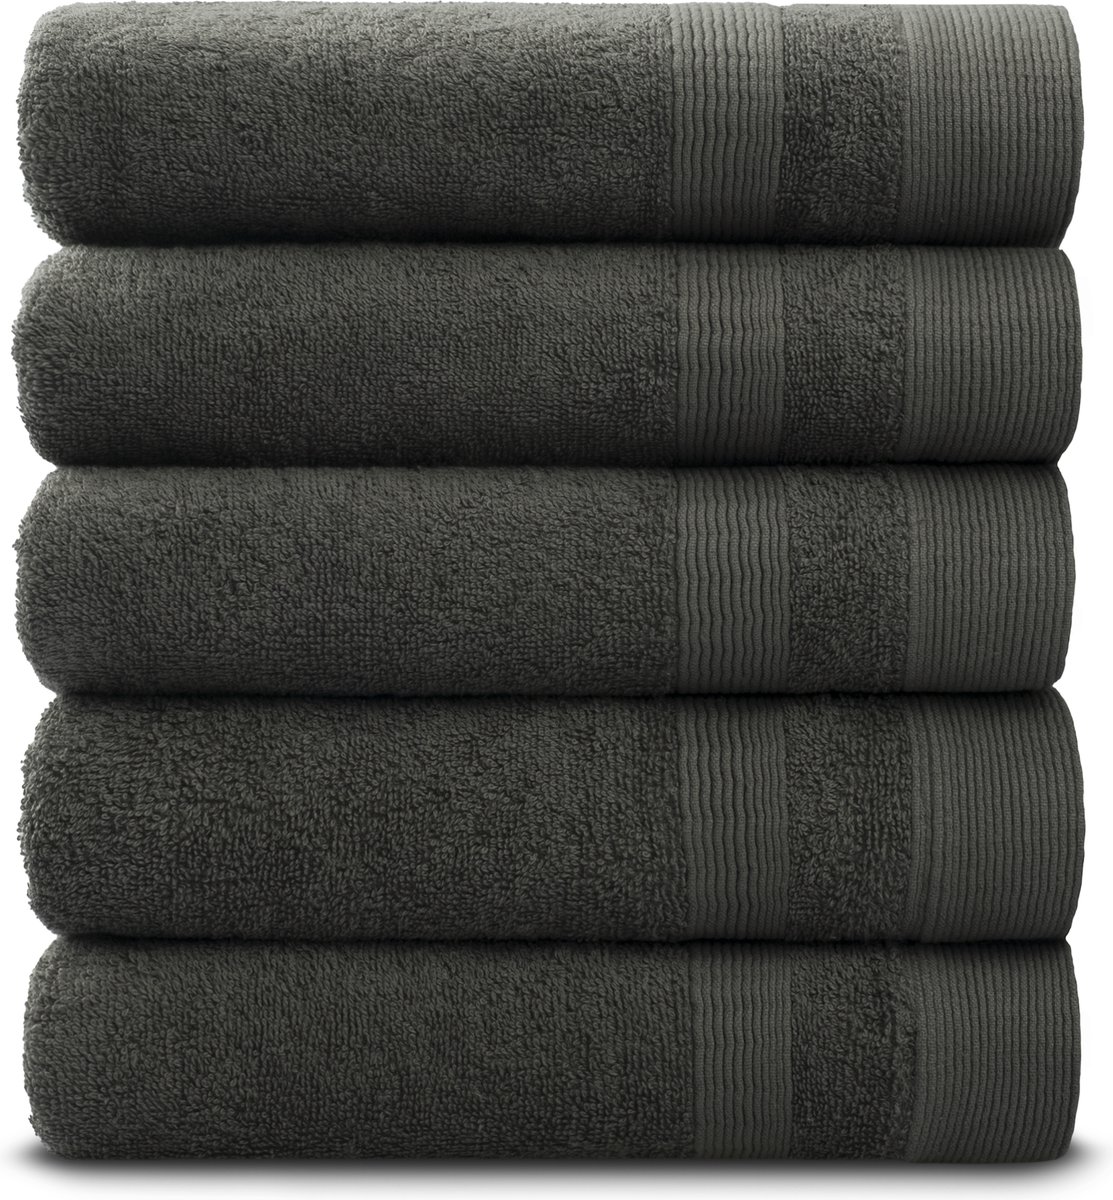 PandaHome - Handdoeken - 5 delig - 5 handdoeken 50x100 cm - 100% Katoen - Antraciet Handddoeken - Towels